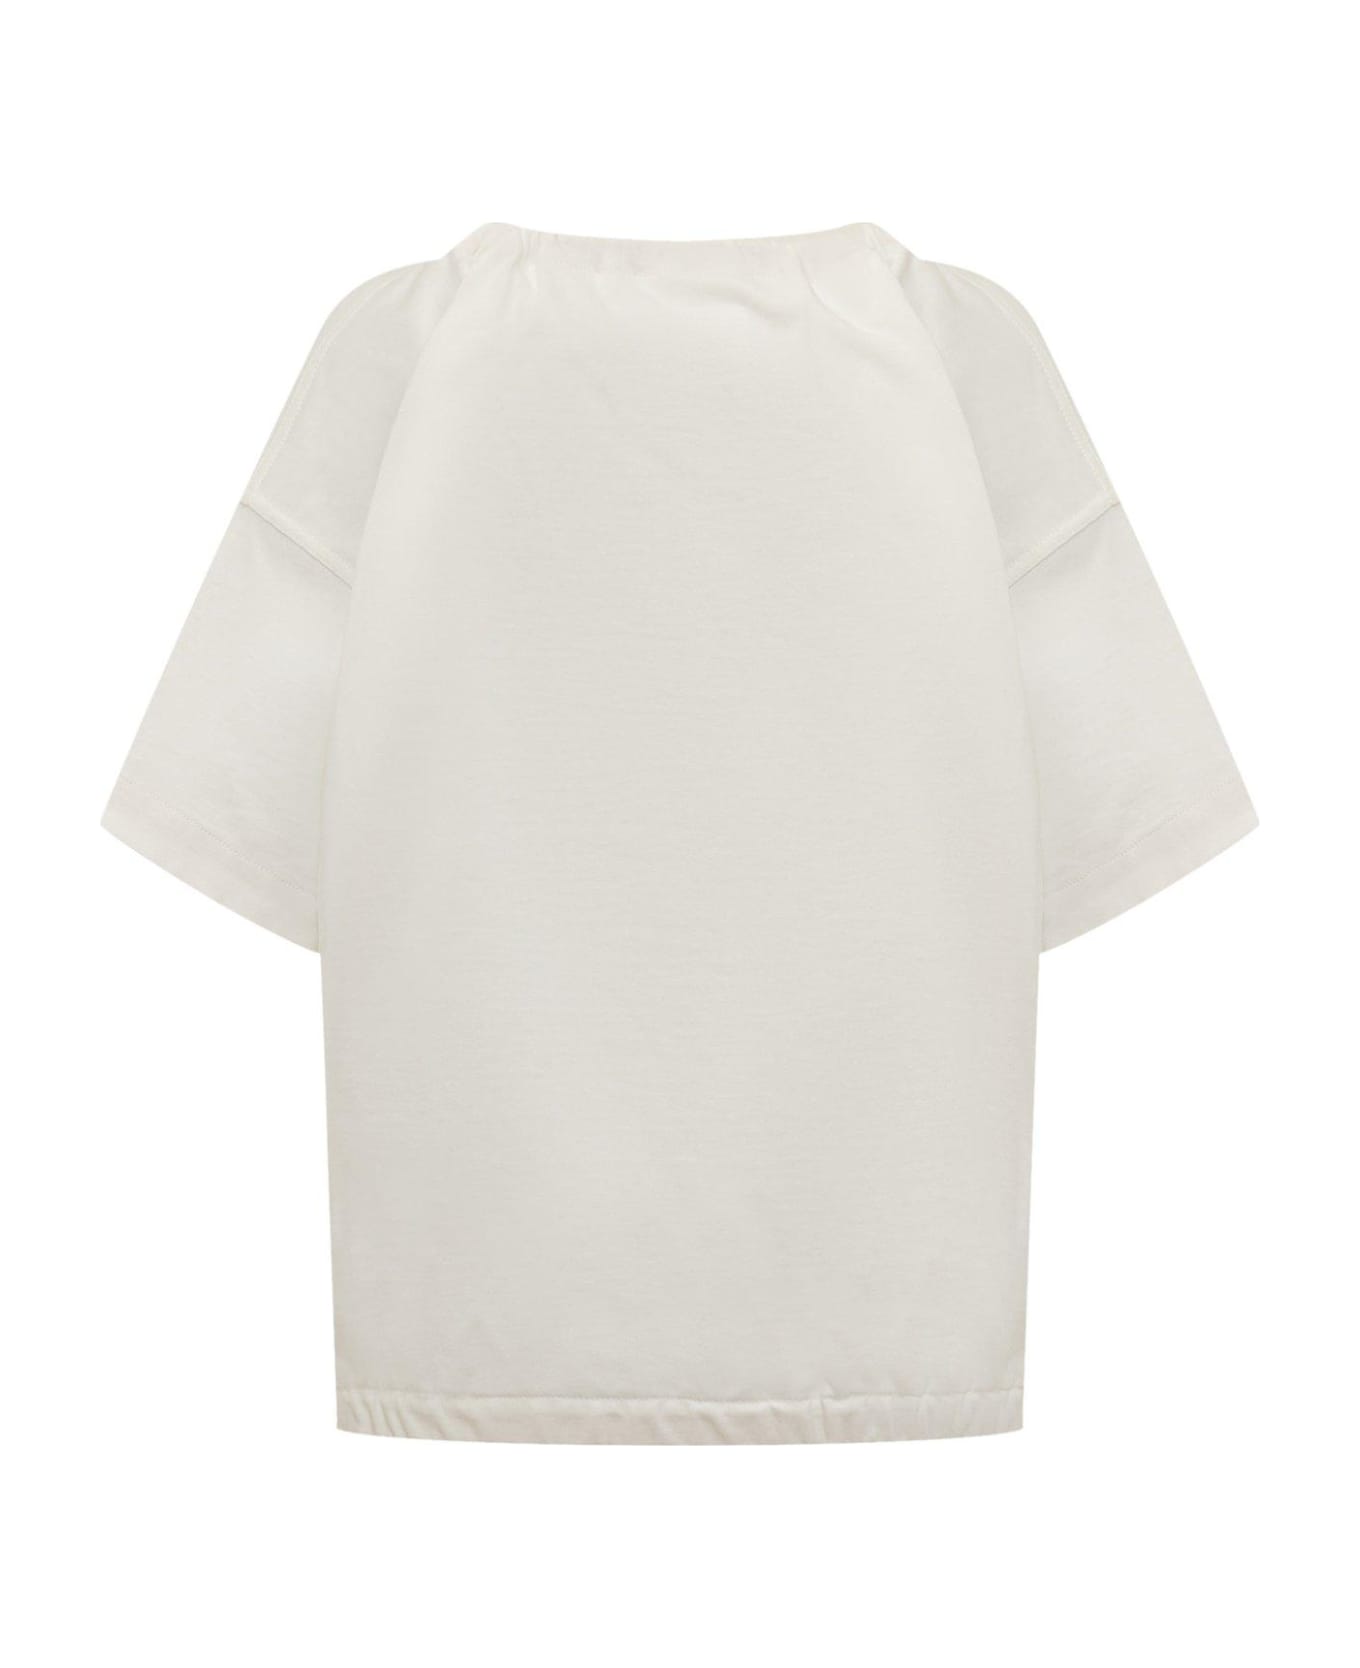 Jil Sander + Bow-detailed Short-sleeved Blouse - White ブラウス